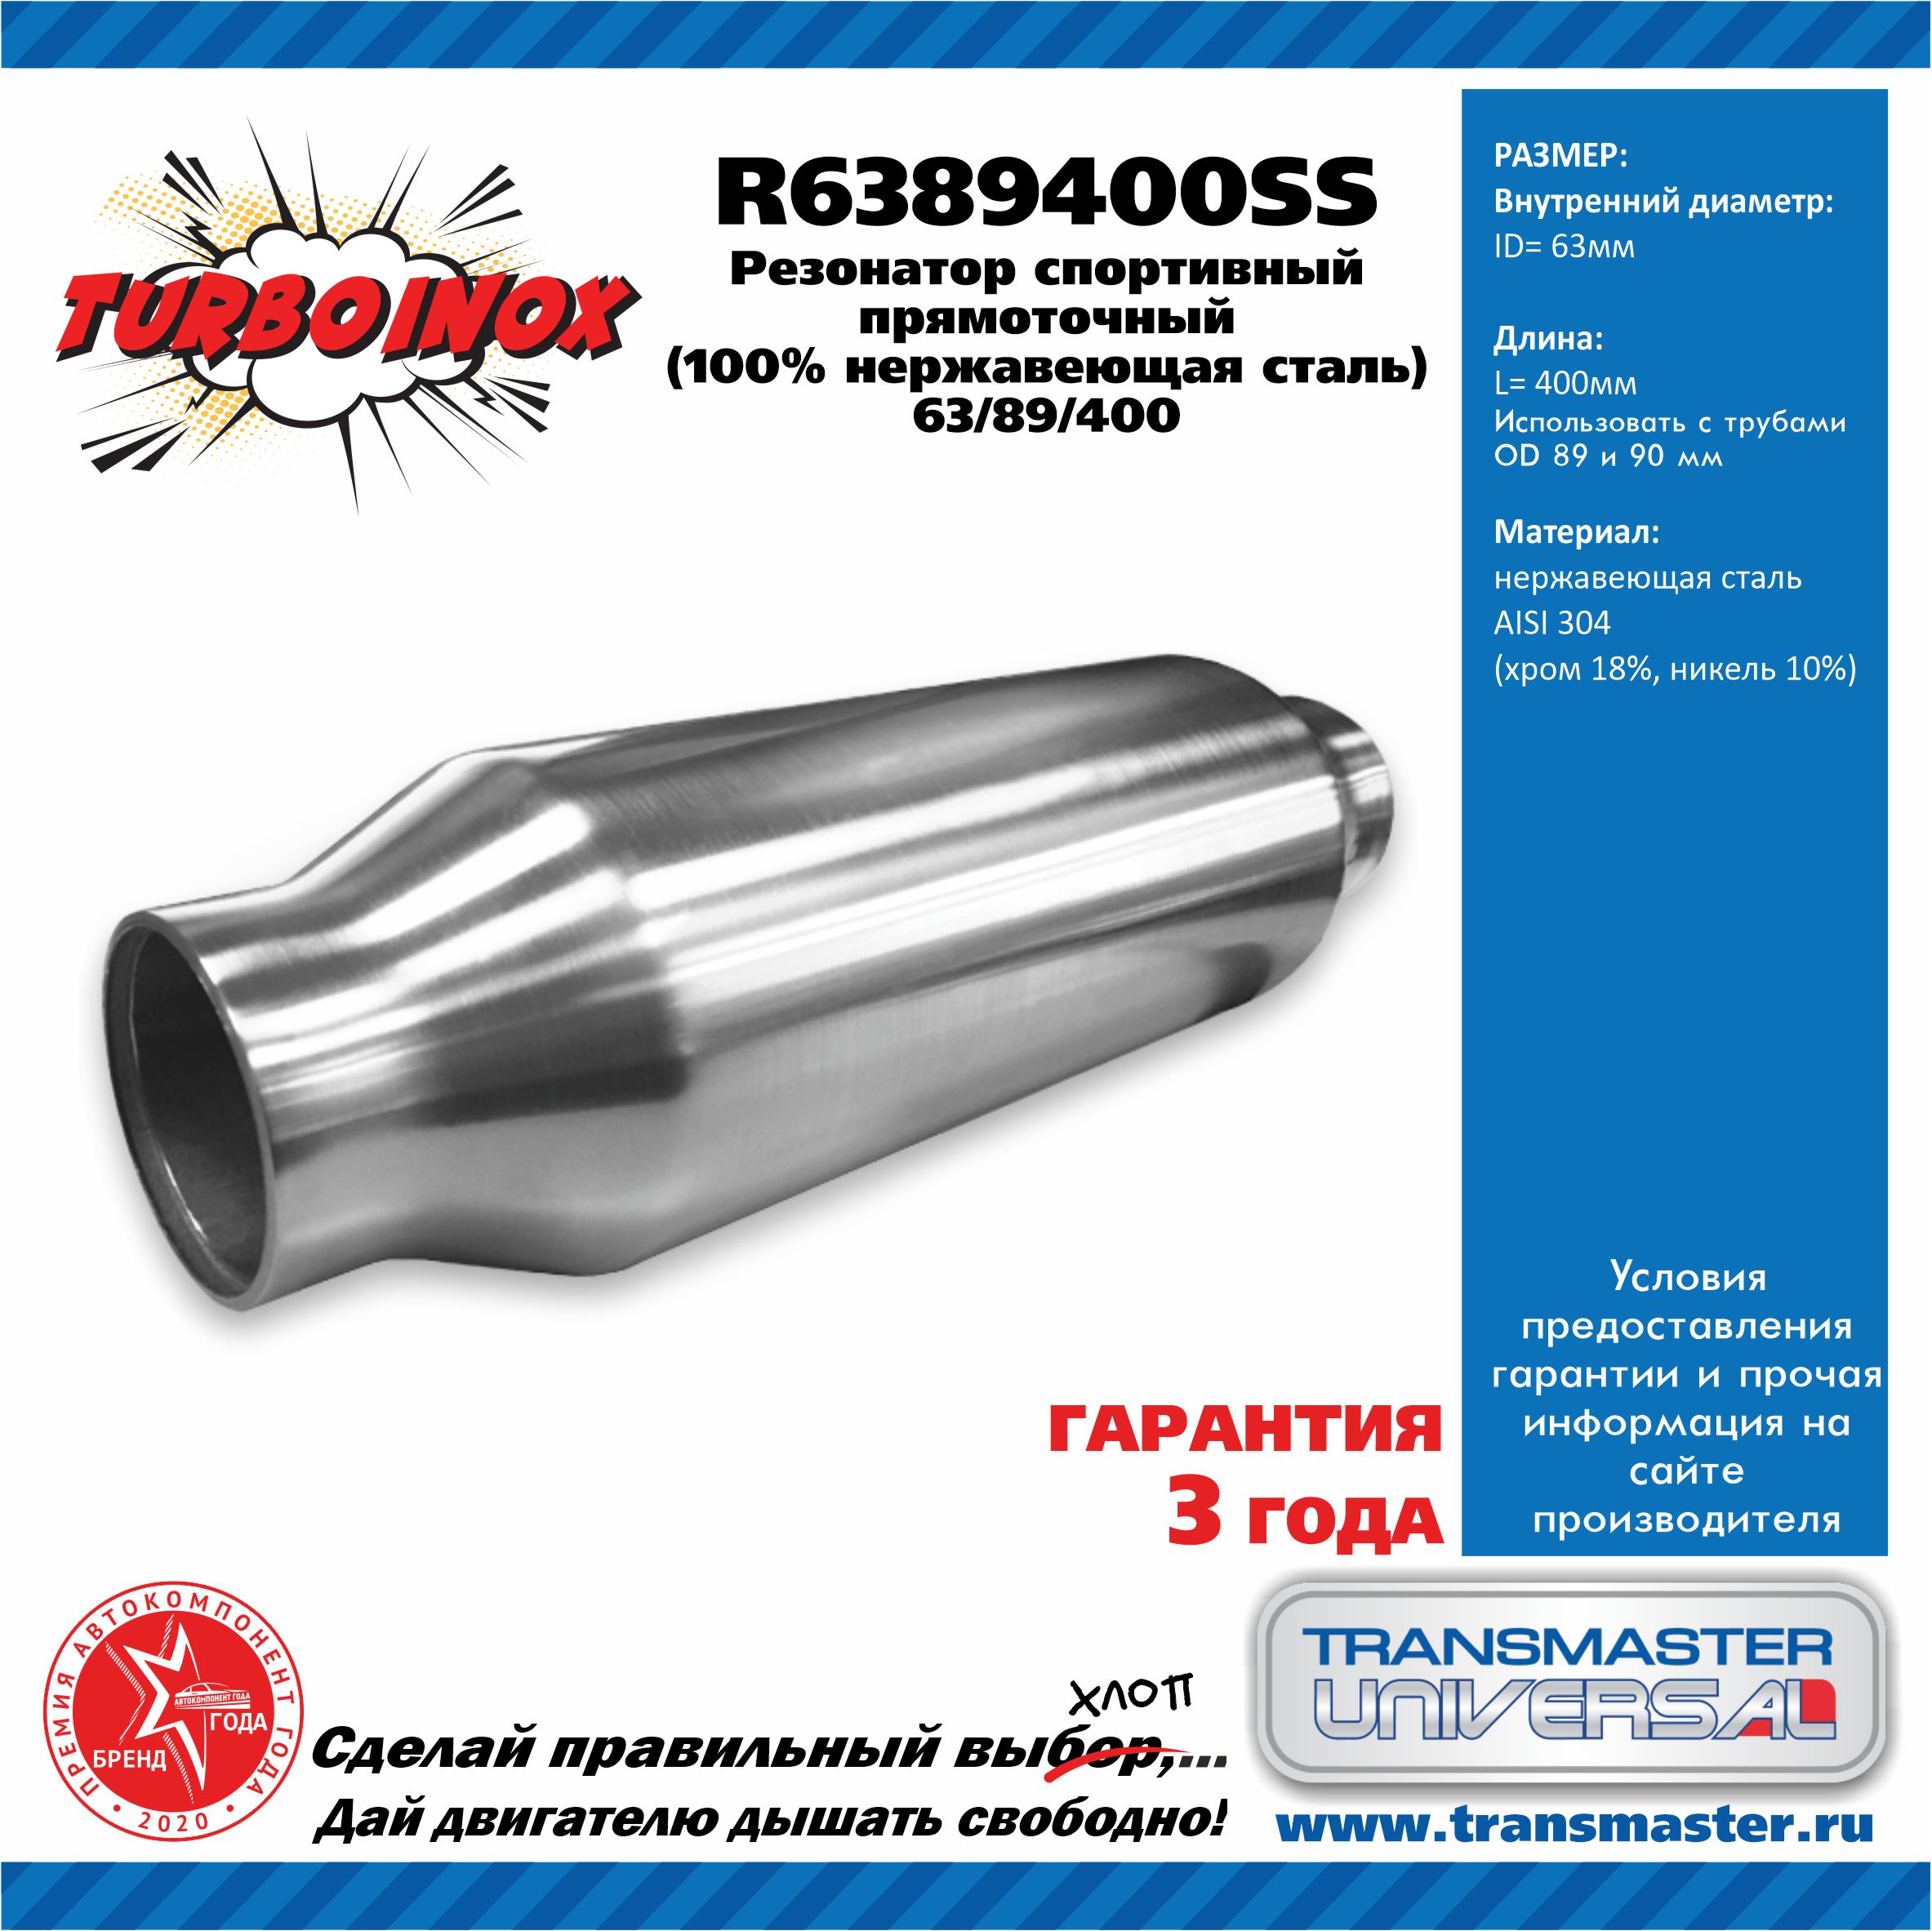 Резонатор спортивный прямоточный серия turboinox (100% нержавеющая сталь) - TRANSMASTER UNIVERSAL R6389400SS